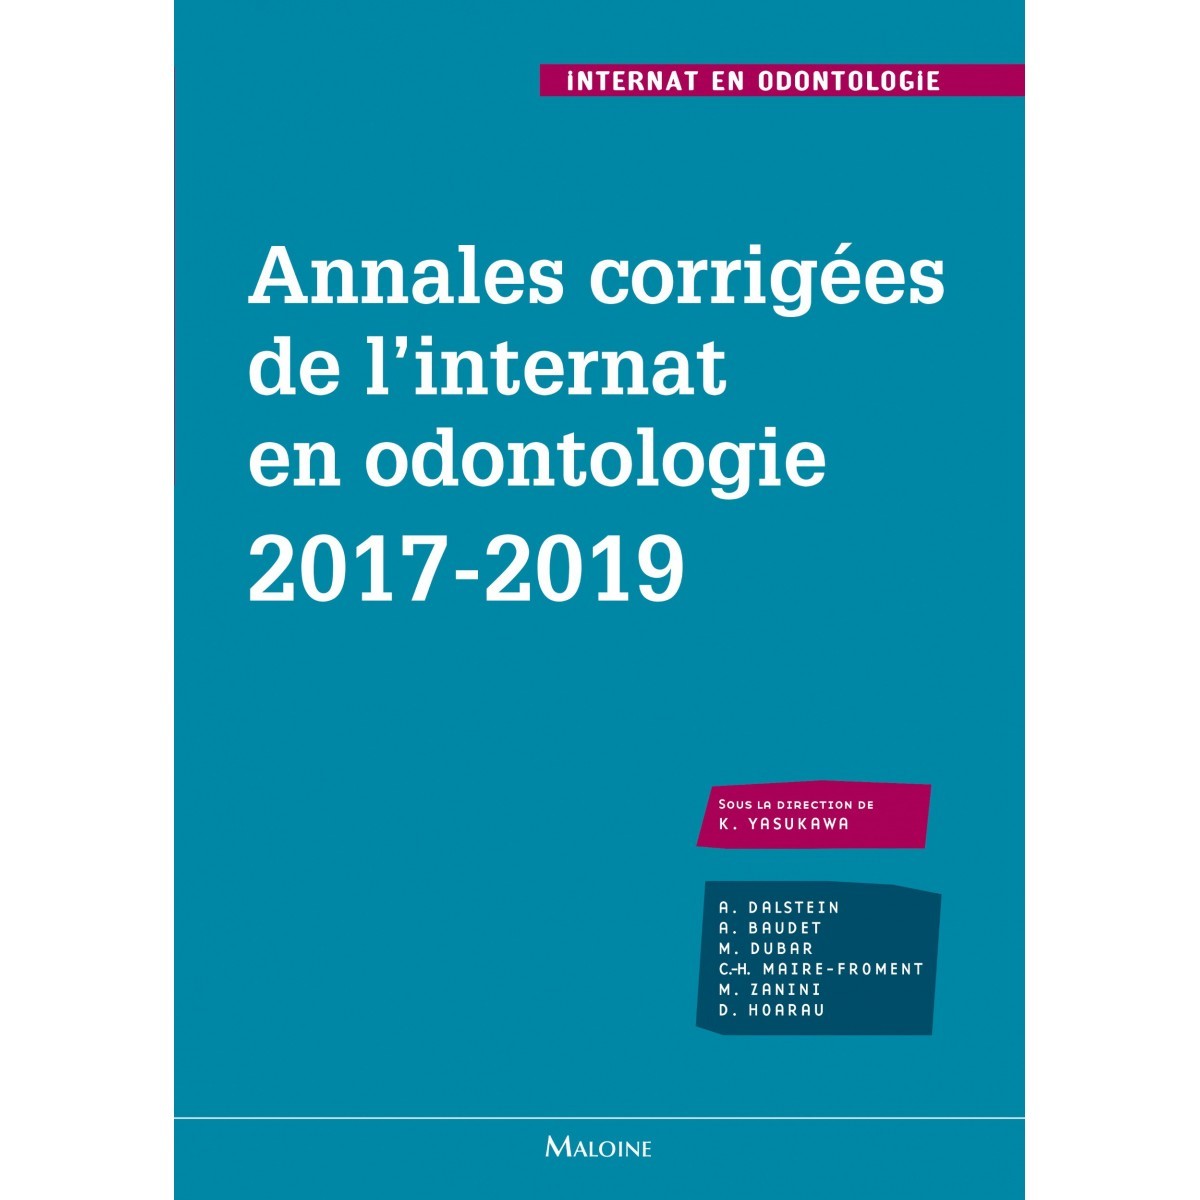 Annales corrigées de l'internat en odontologie 2017-2019